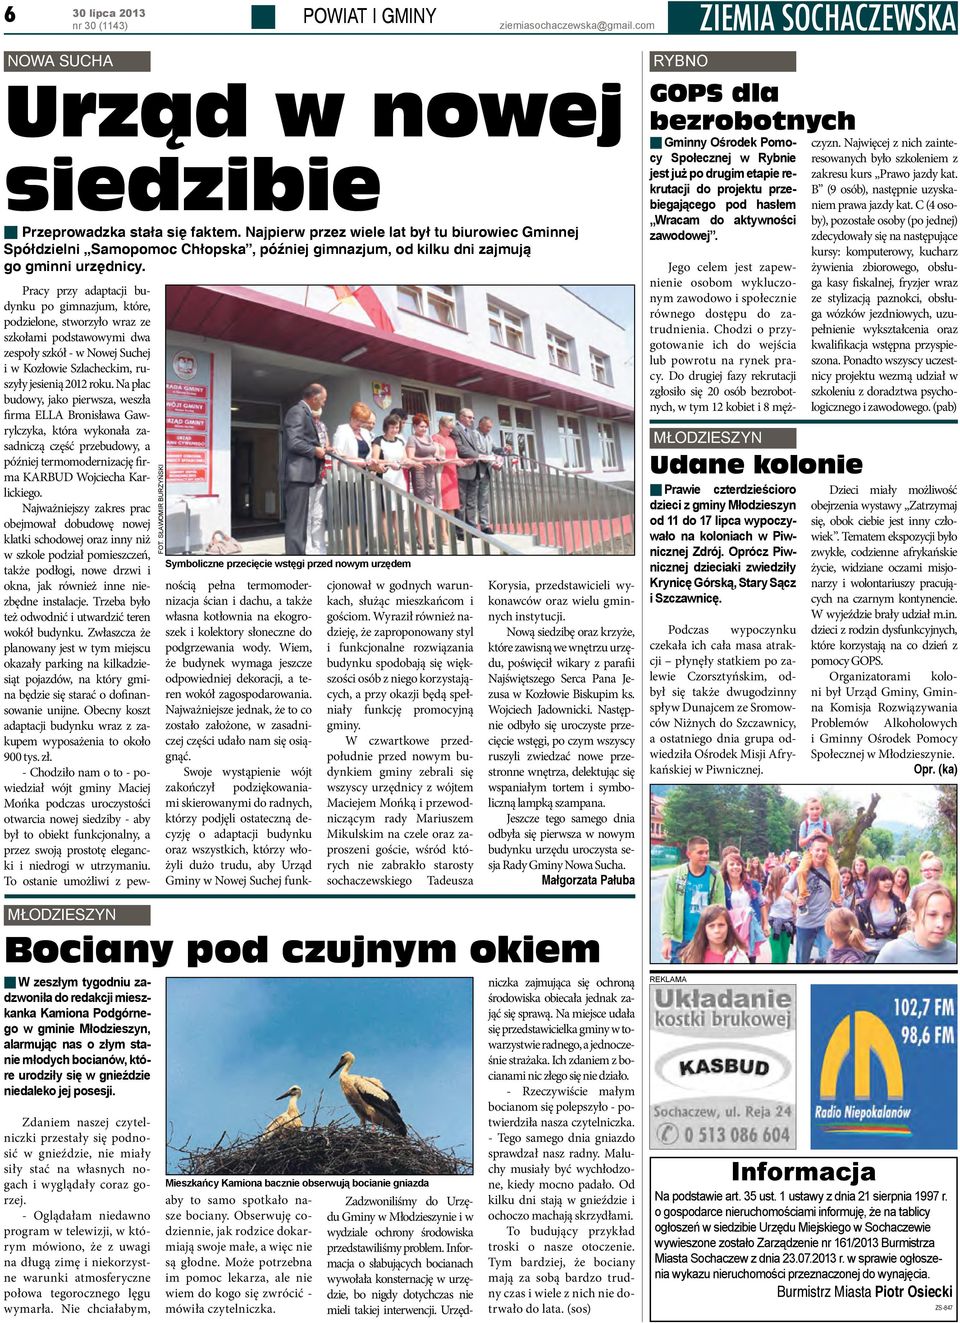 Pracy przy adaptacji budynku po gimnazjum, które, podzielone, stworzyło wraz ze szkołami podstawowymi dwa zespoły szkół - w Nowej Suchej i w Kozłowie Szlacheckim, ruszyły jesienią 2012 roku.